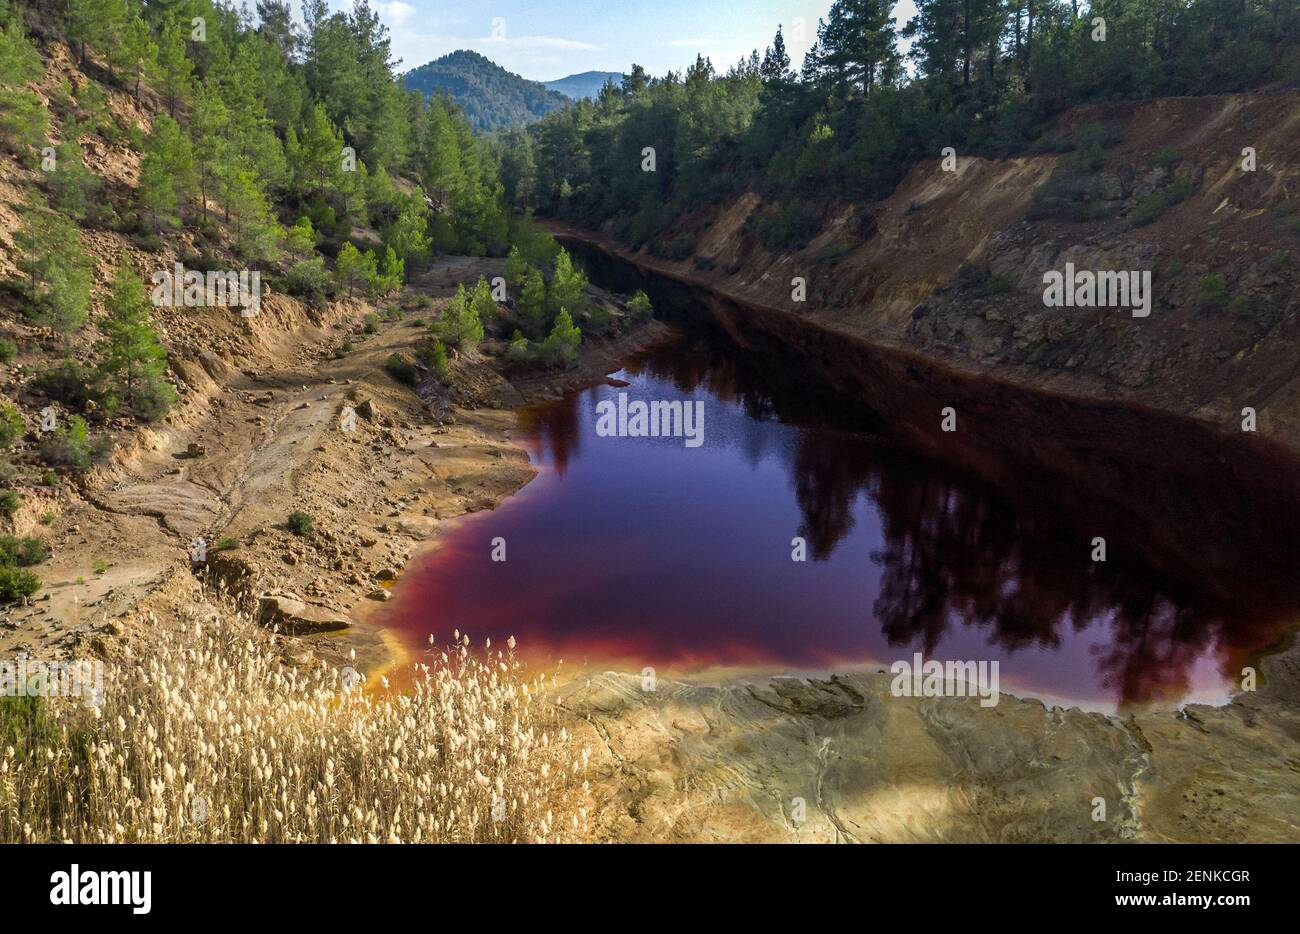 Lago rosso acido nella miniera a cielo aperto abbandonata in una foresta, risultato dell'estrazione del minerale di pirite nella zona Foto Stock